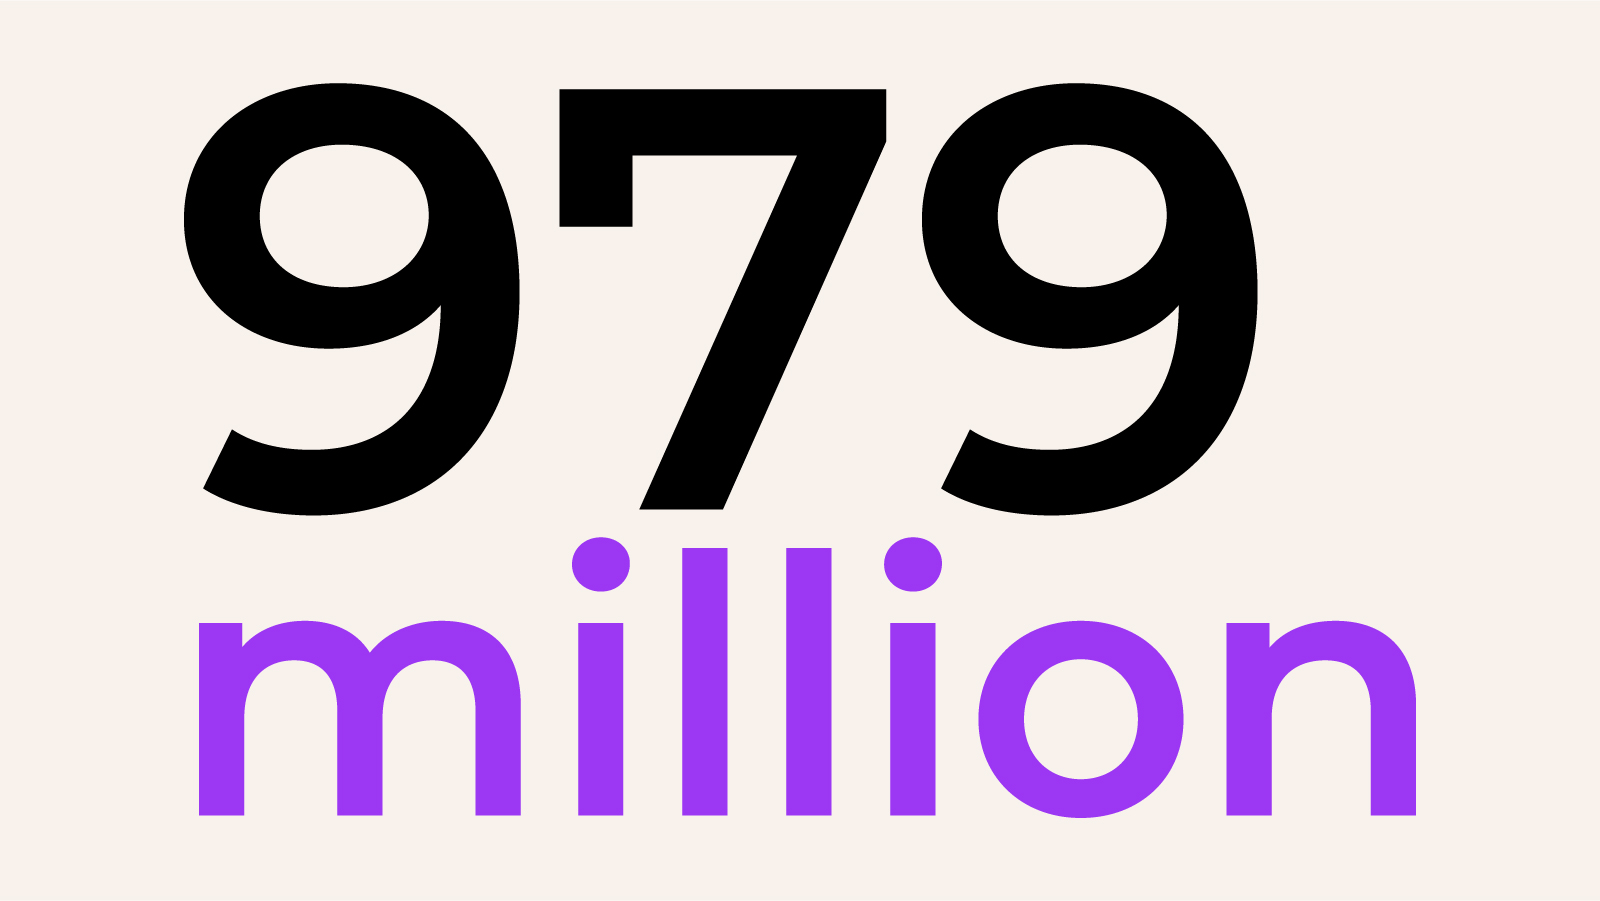 979 million